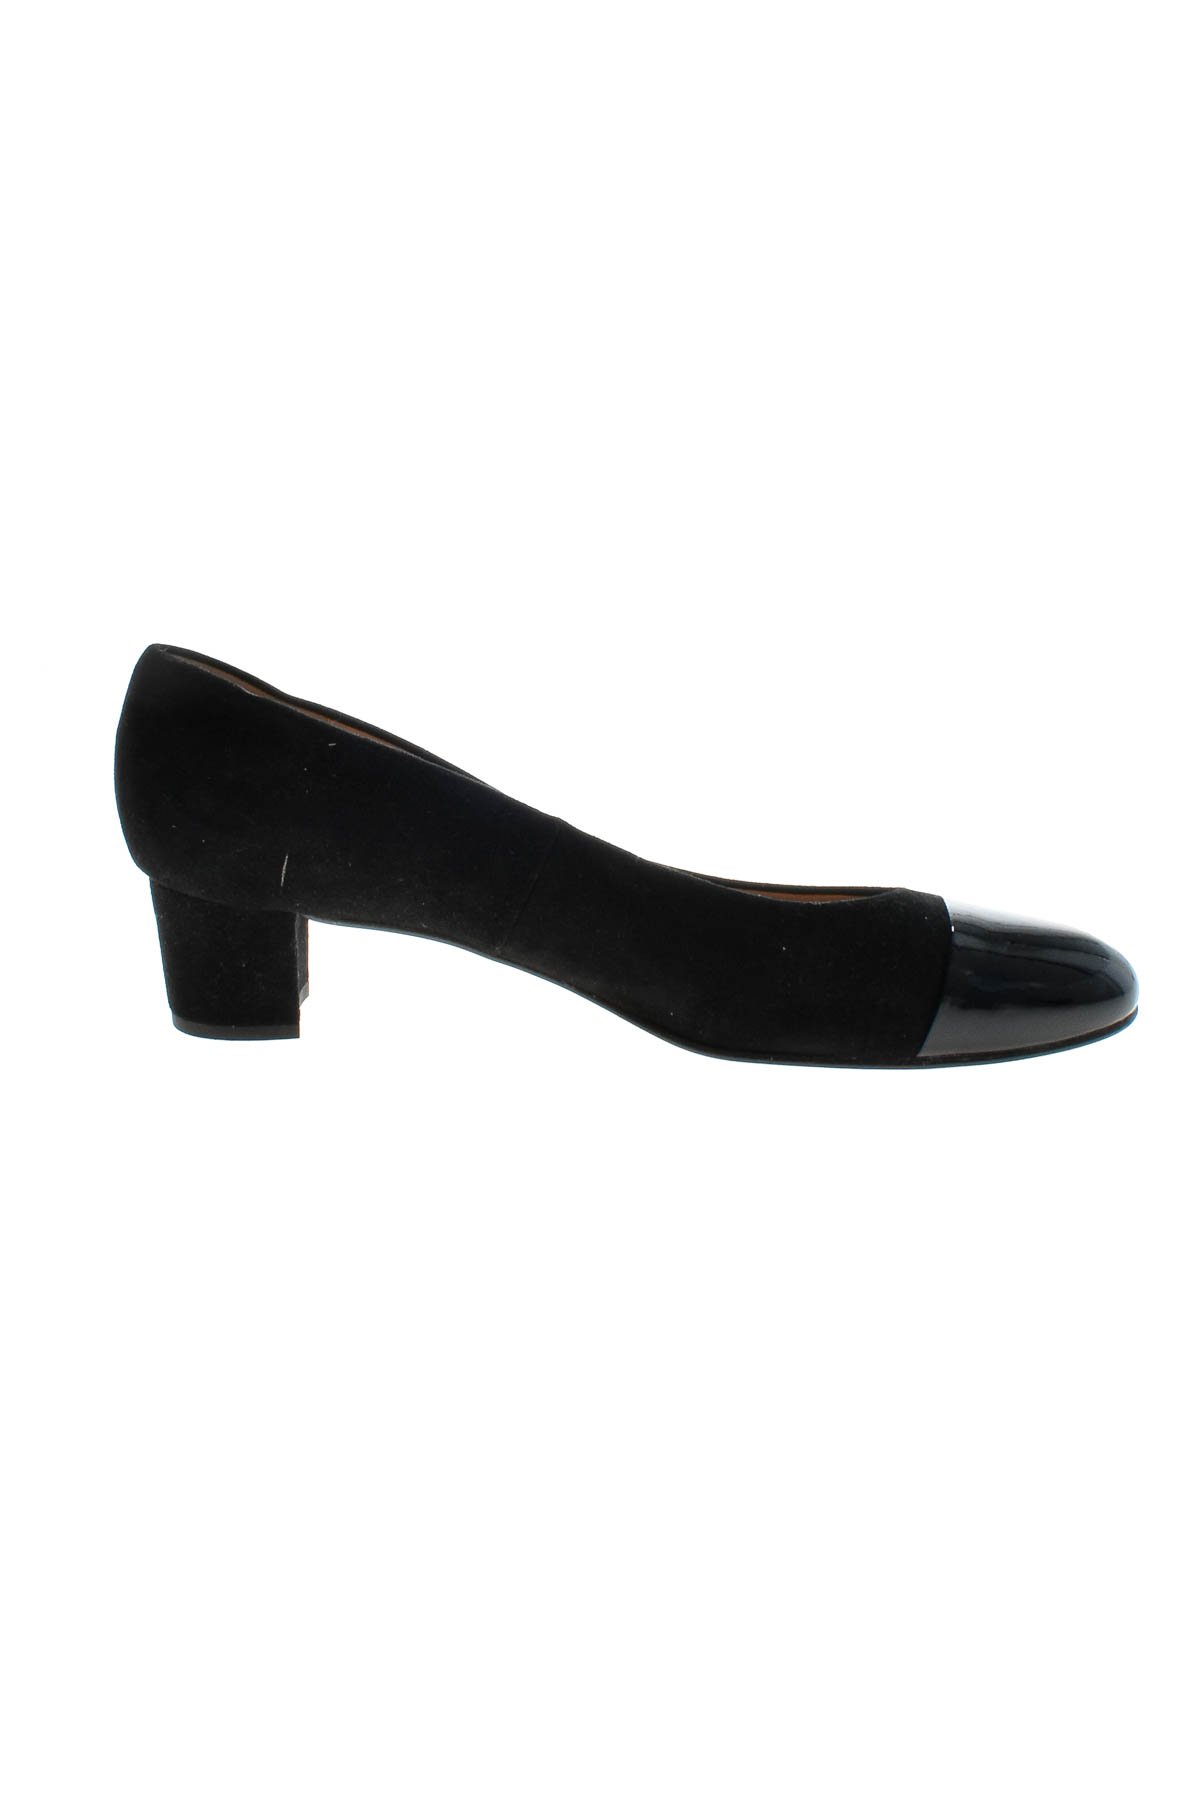 Γυναικεία παπούτσια - Bariello Milano - 2